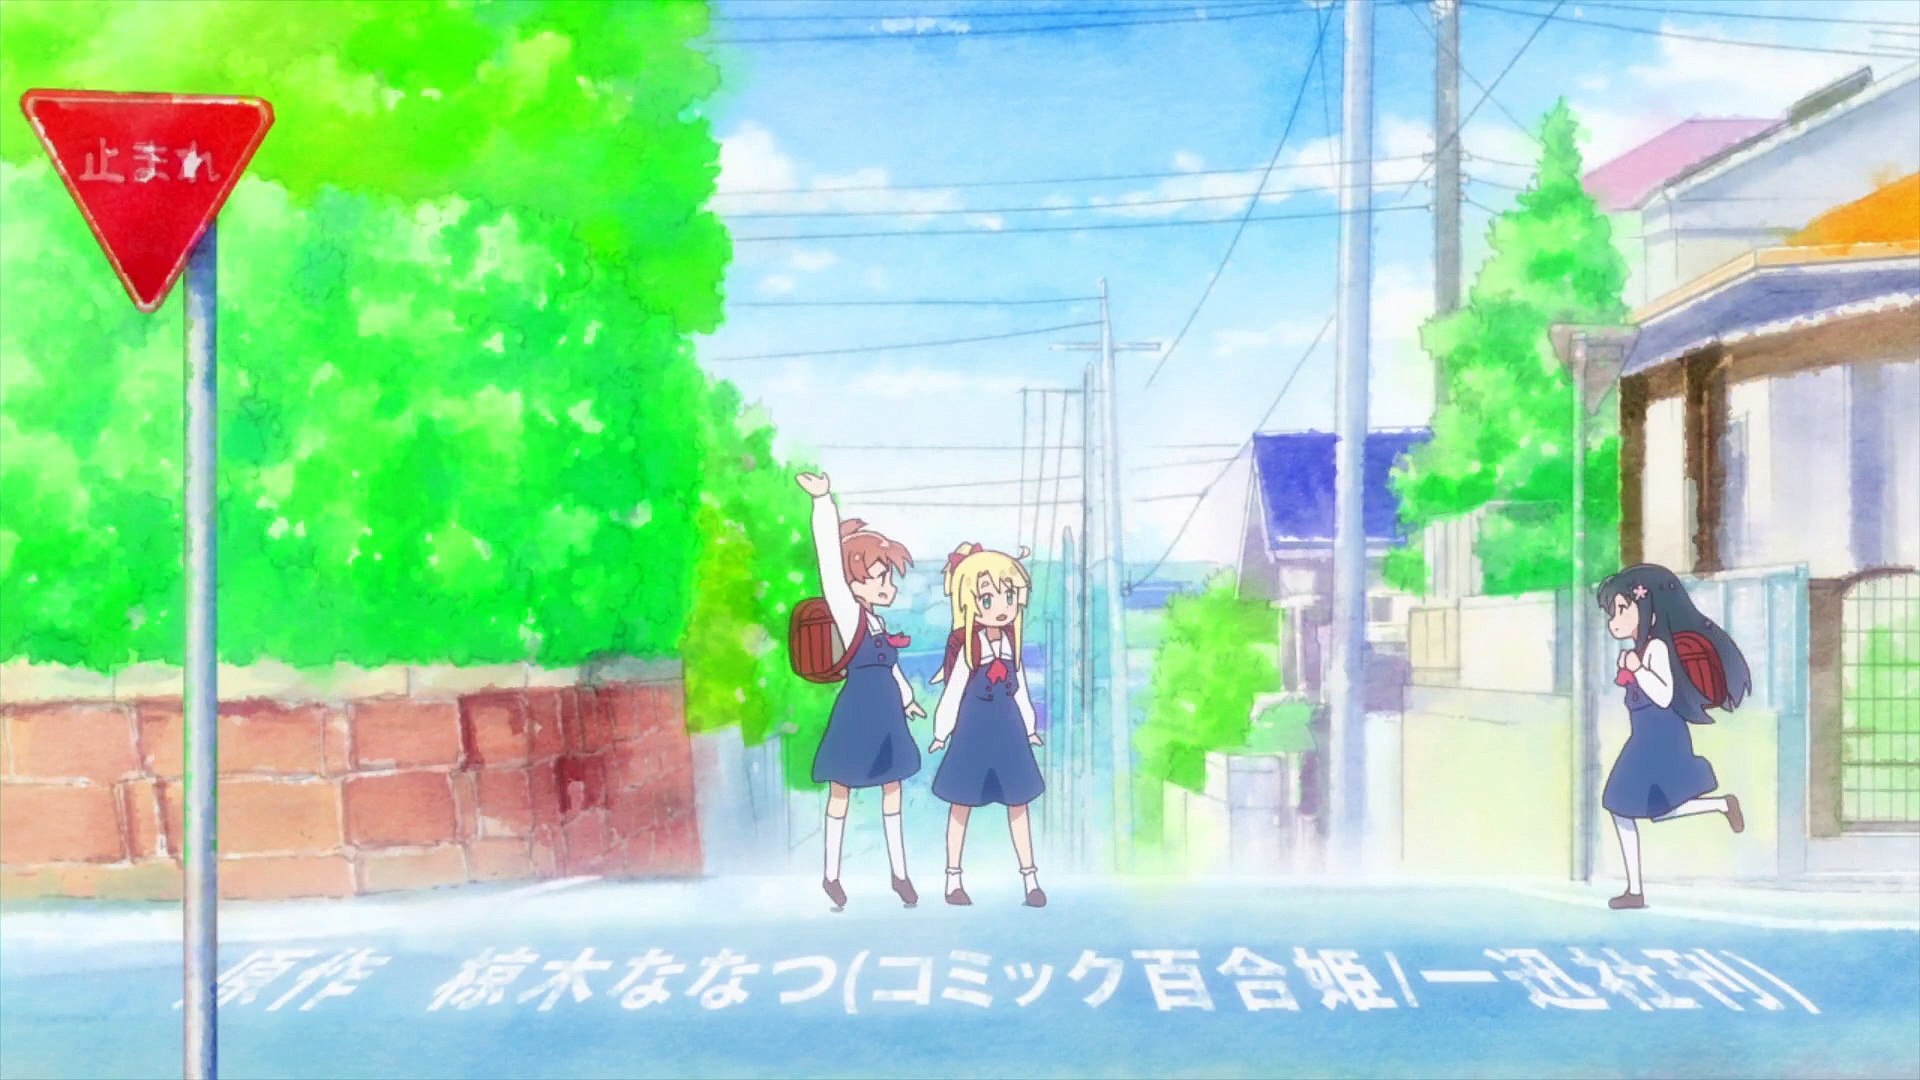 Anime: Watashi ni Tenshi ga Maiorita! #edit #anime #animetion